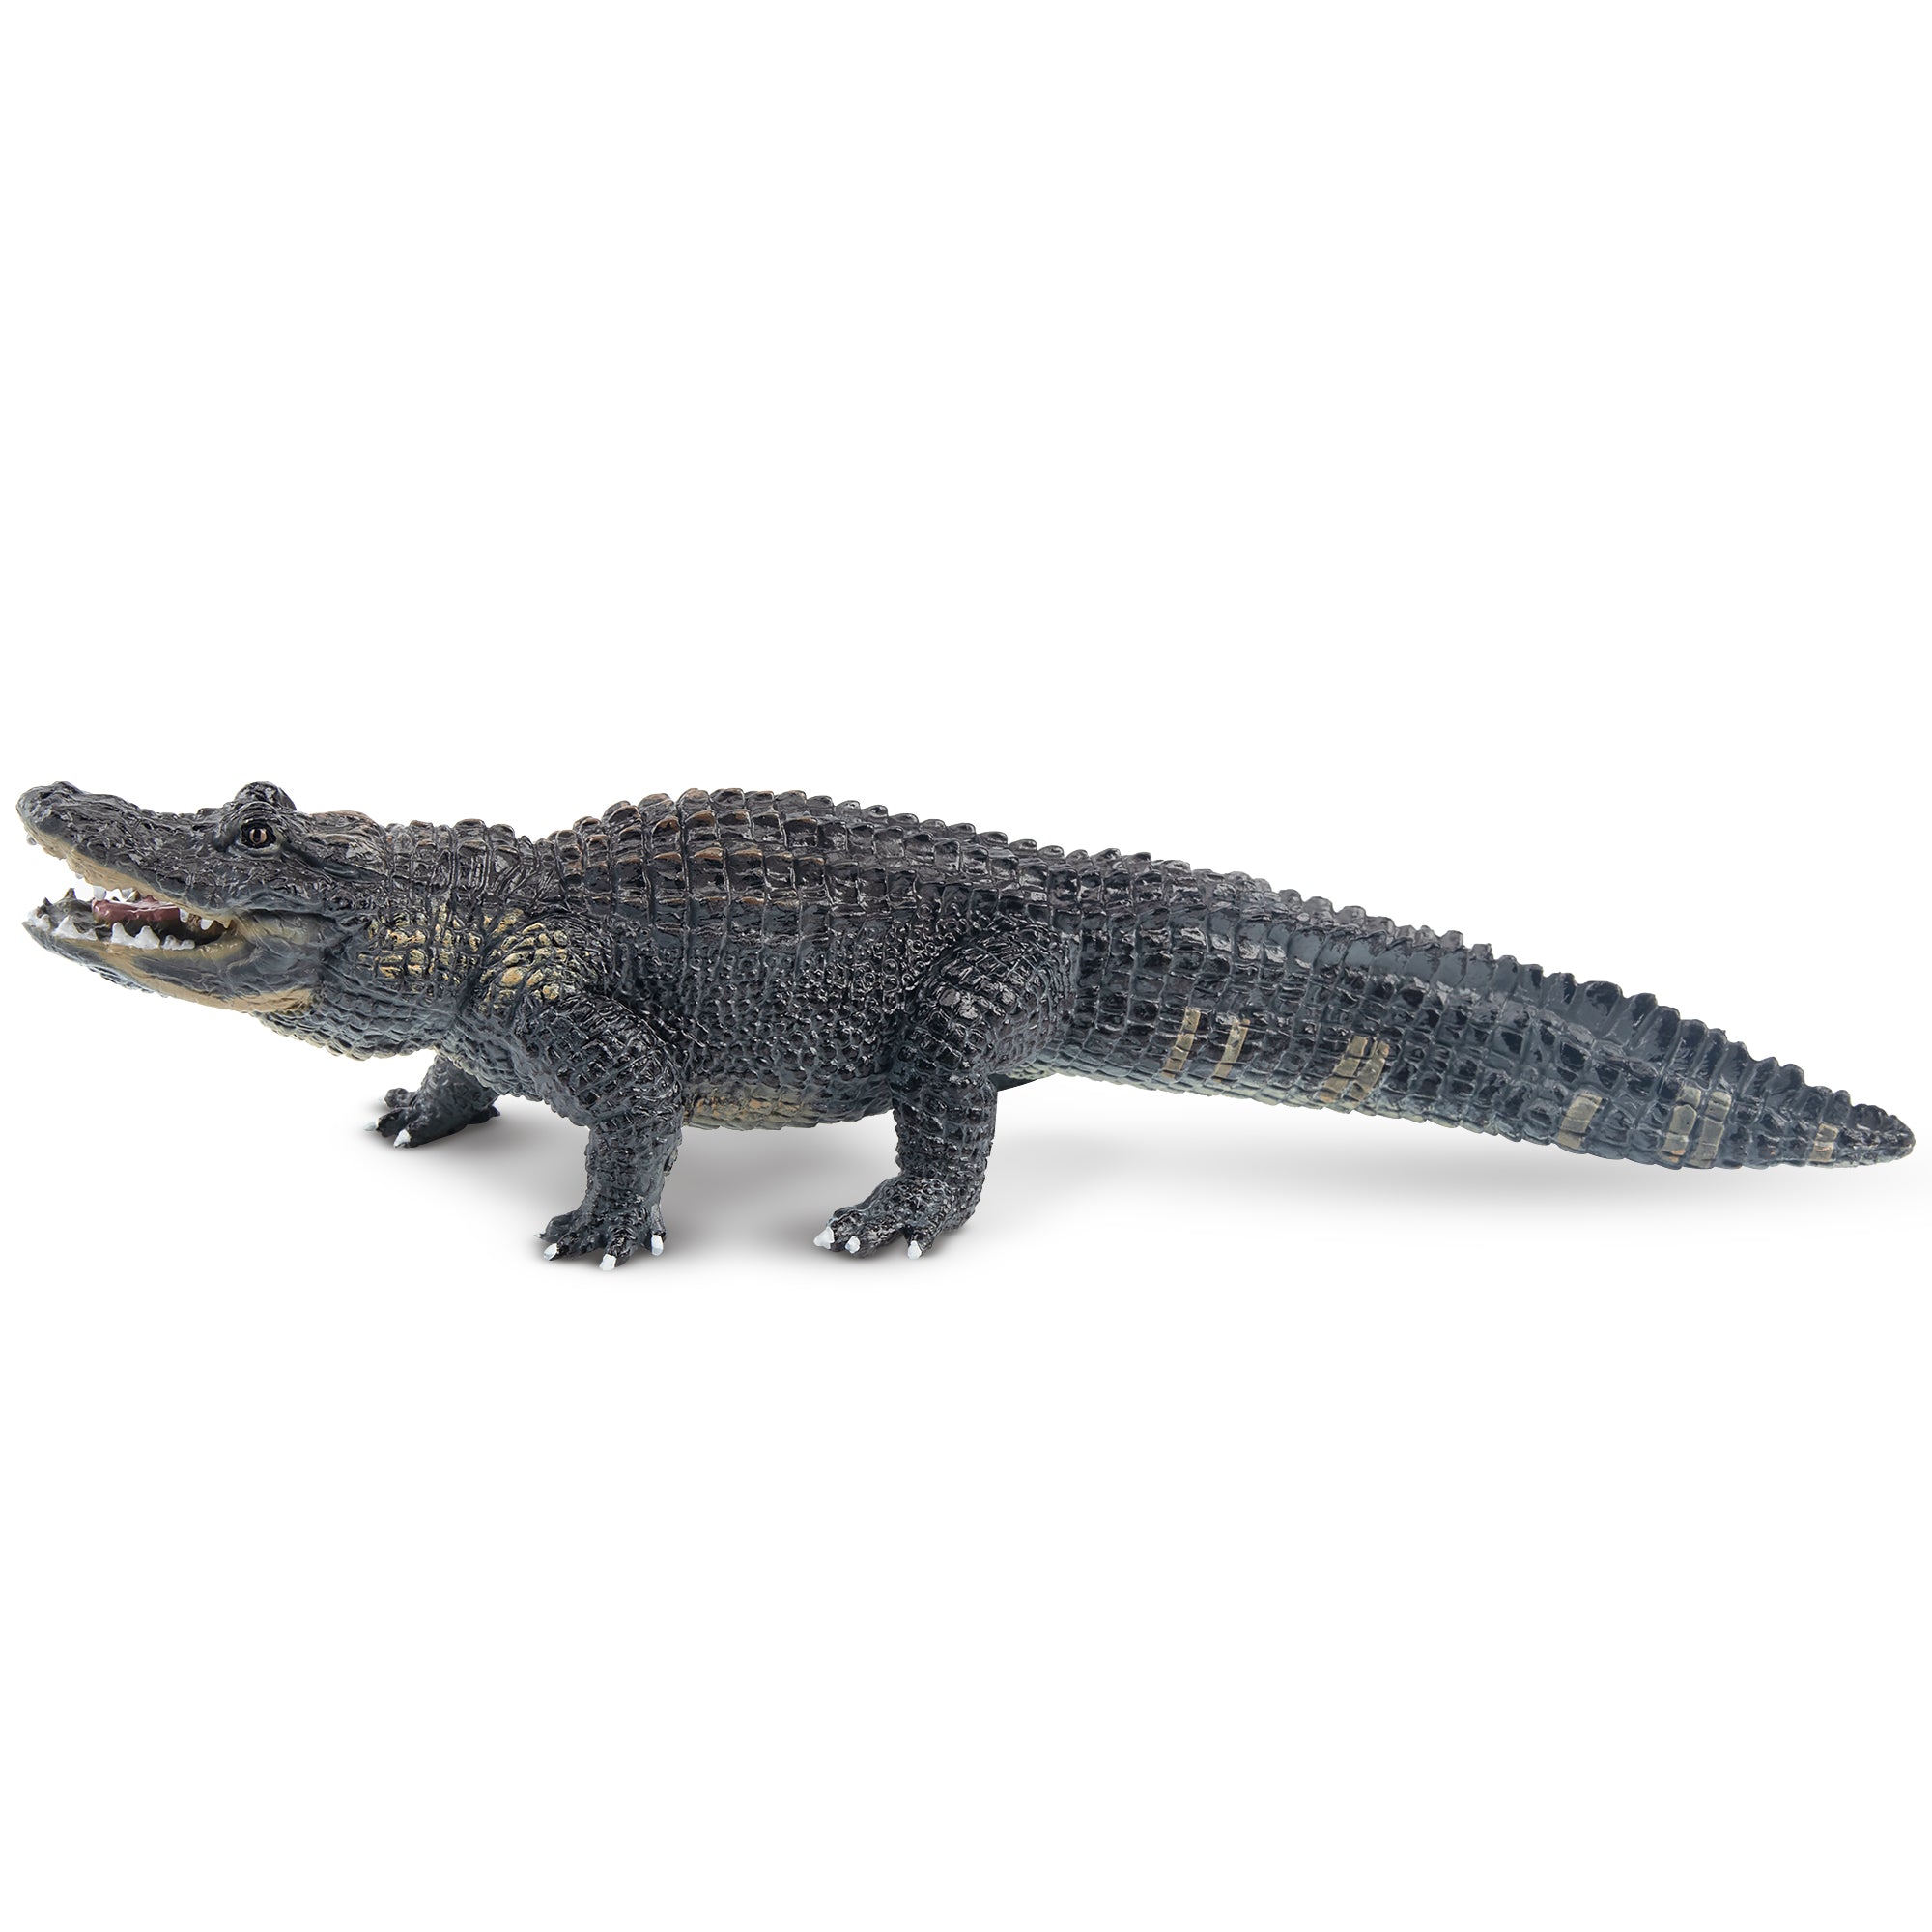 Toymany Alligator Figurine Toy-2